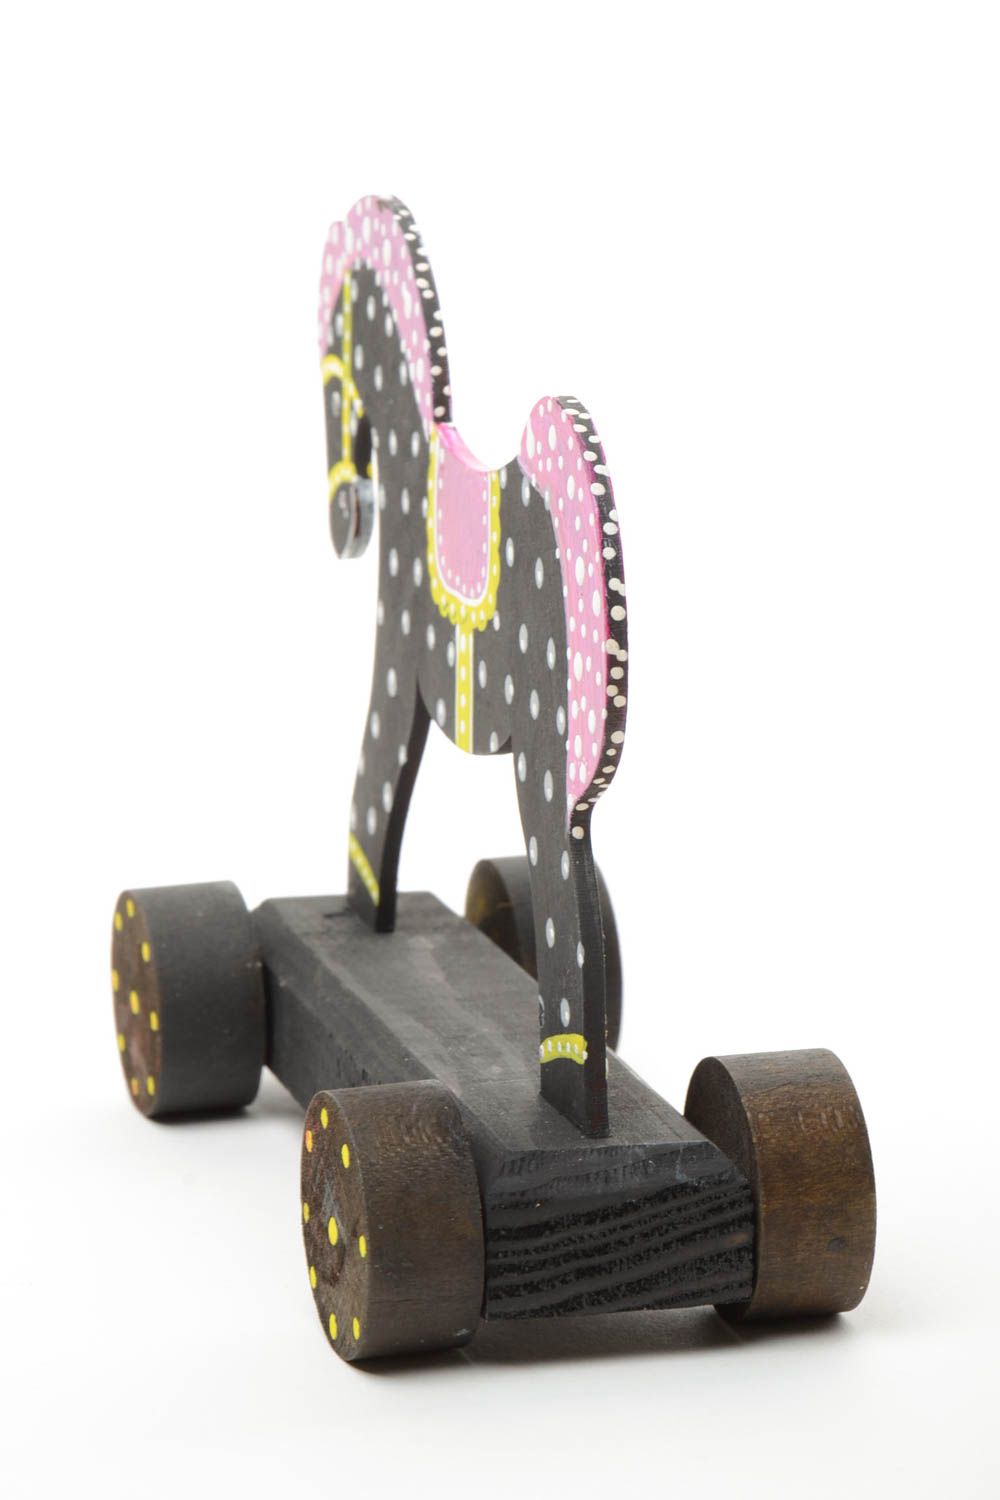 Nachzieher Spielzeug Pferd aus Holz mit Acrylfarben bemalt gepunktet handmade foto 3